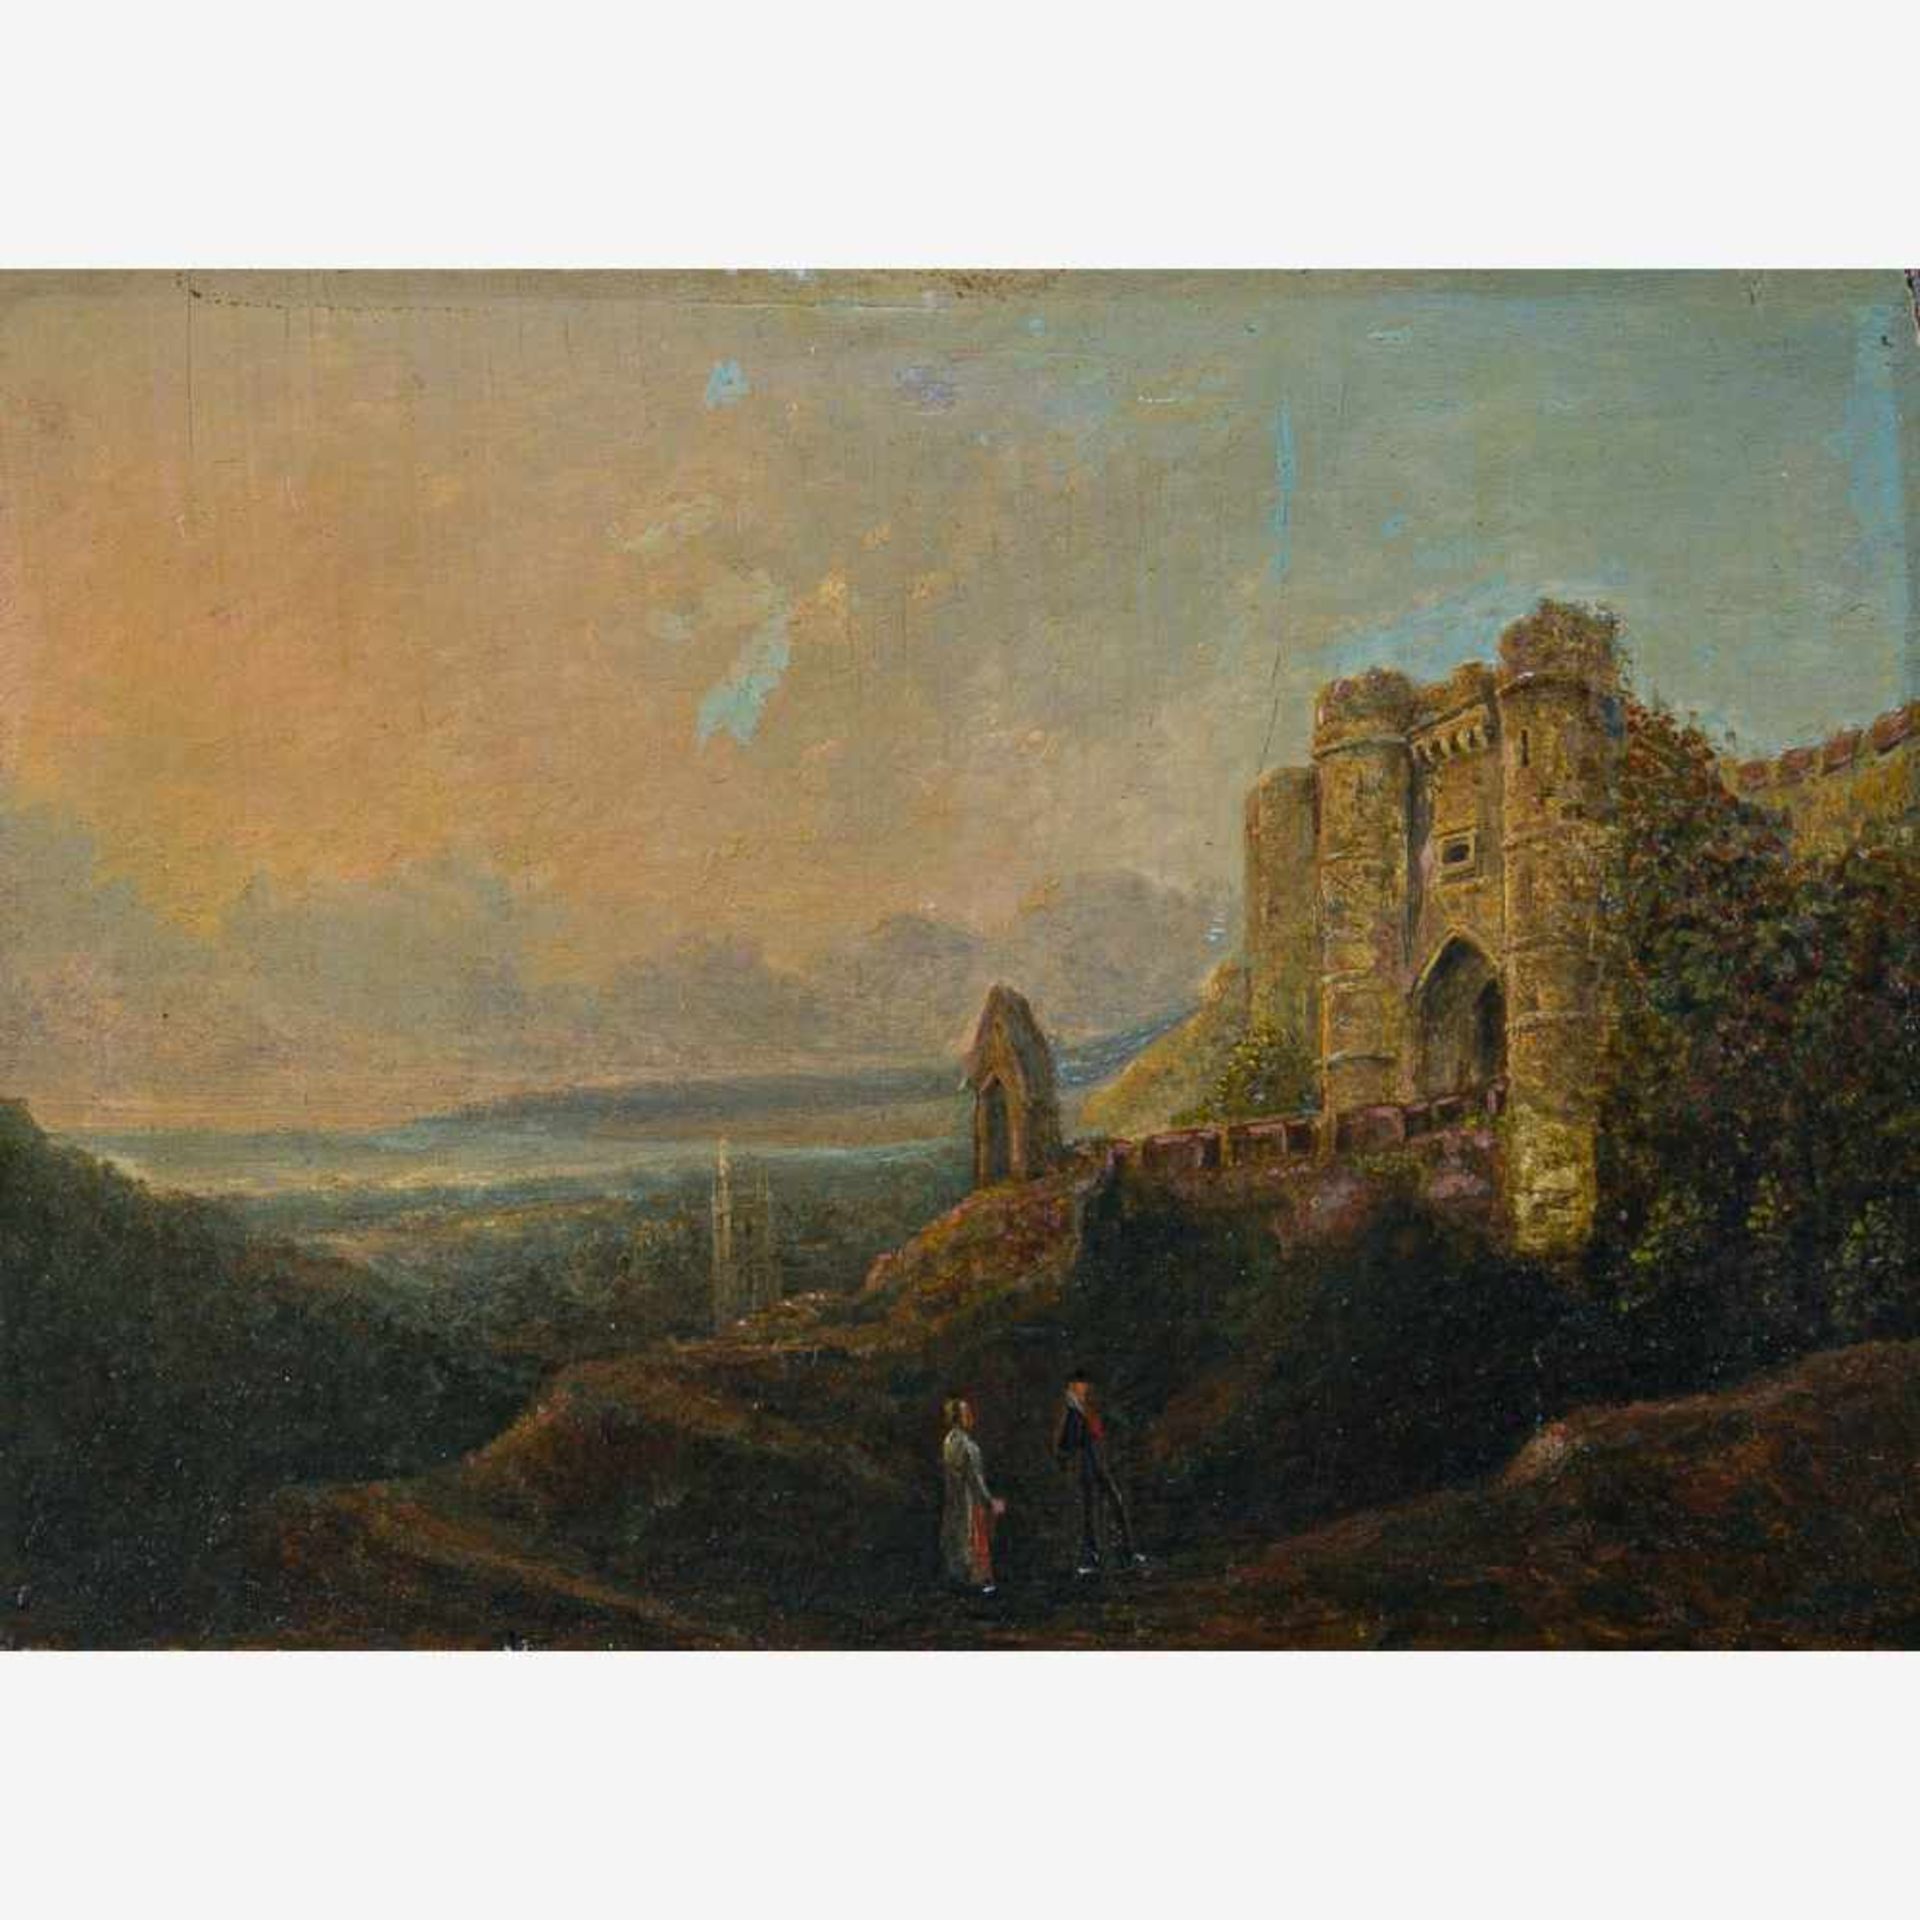 Englischer Maler (1. H. 19. Jh.)Mächtiges Tudorcastleauf Hügel über Kathedralstadt gelegen, mit